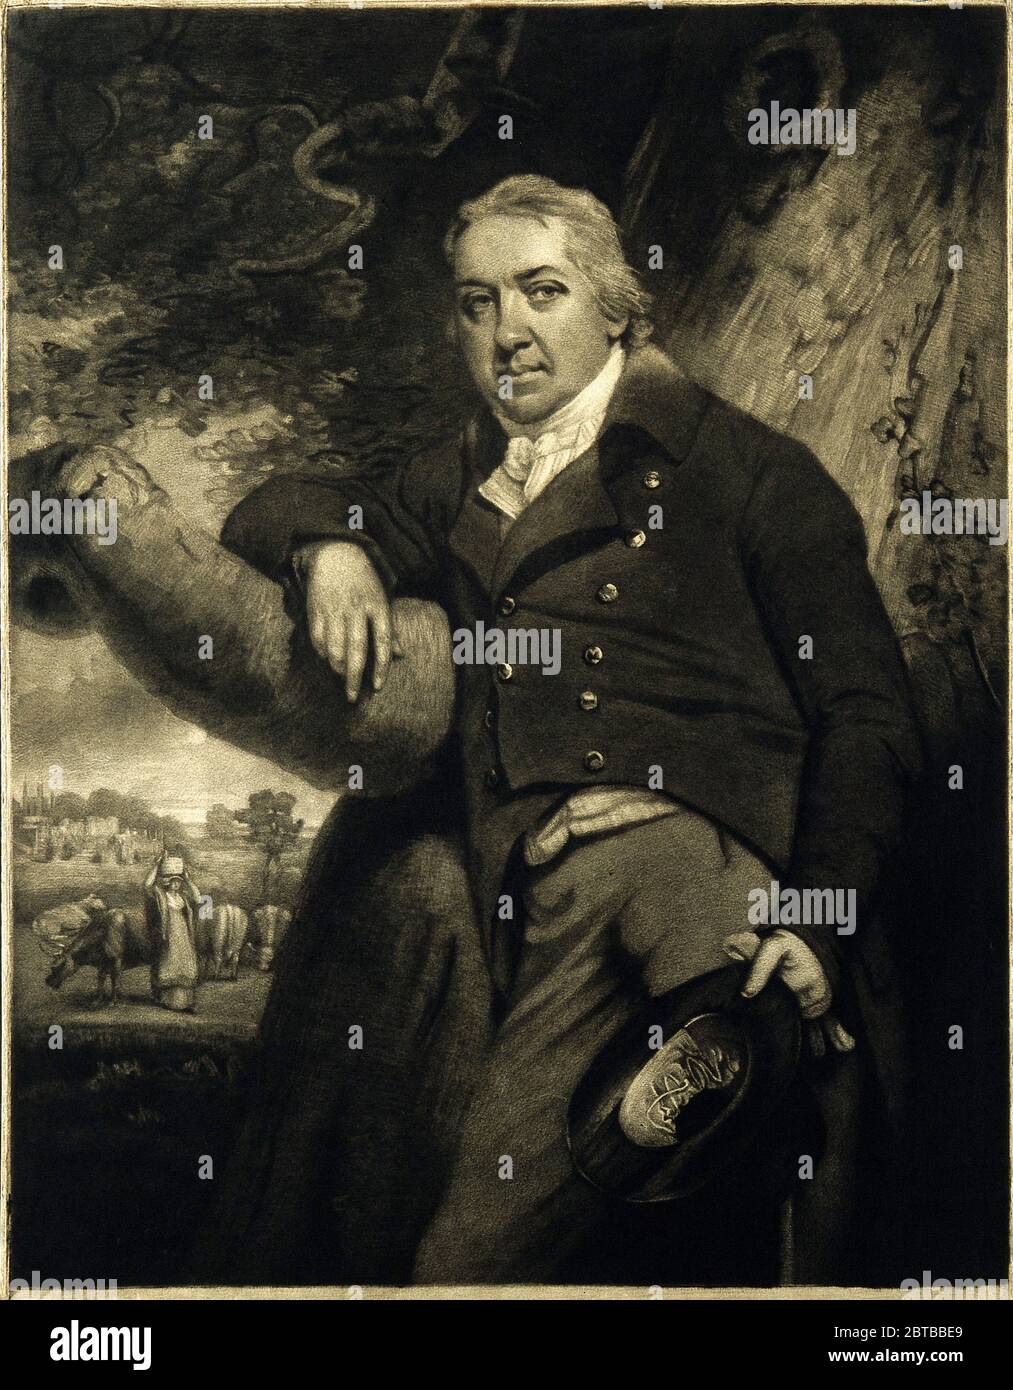 1800 ca., GROSSBRITANNIEN: Der britische Arzt, Virologe und Naturforscher EDWARD JENNER ( 1749 - 1823 ), der an der Entwicklung des POCKENIMPFES mitwirkte. Porträt von John Raphael Smith . - IMPFUNG - VIRUS - VIROLOGO - VIROLOGE - ANTIVAIOLOSA - ANTIVAIOLO - ANTI-VAIOLO - ANTIVAIOLO - VACCINAZIONE - foto storiche - scienziato - Wissenschaftler - Portrait - ritratto - GRAND BRETAGNA - DOTTORE - MEDICO - MEDICINA - Medizin - SCIENTIZA - WISSENSCHAFT - illustrazione - Illustration --- Archivio GBB Stockfoto